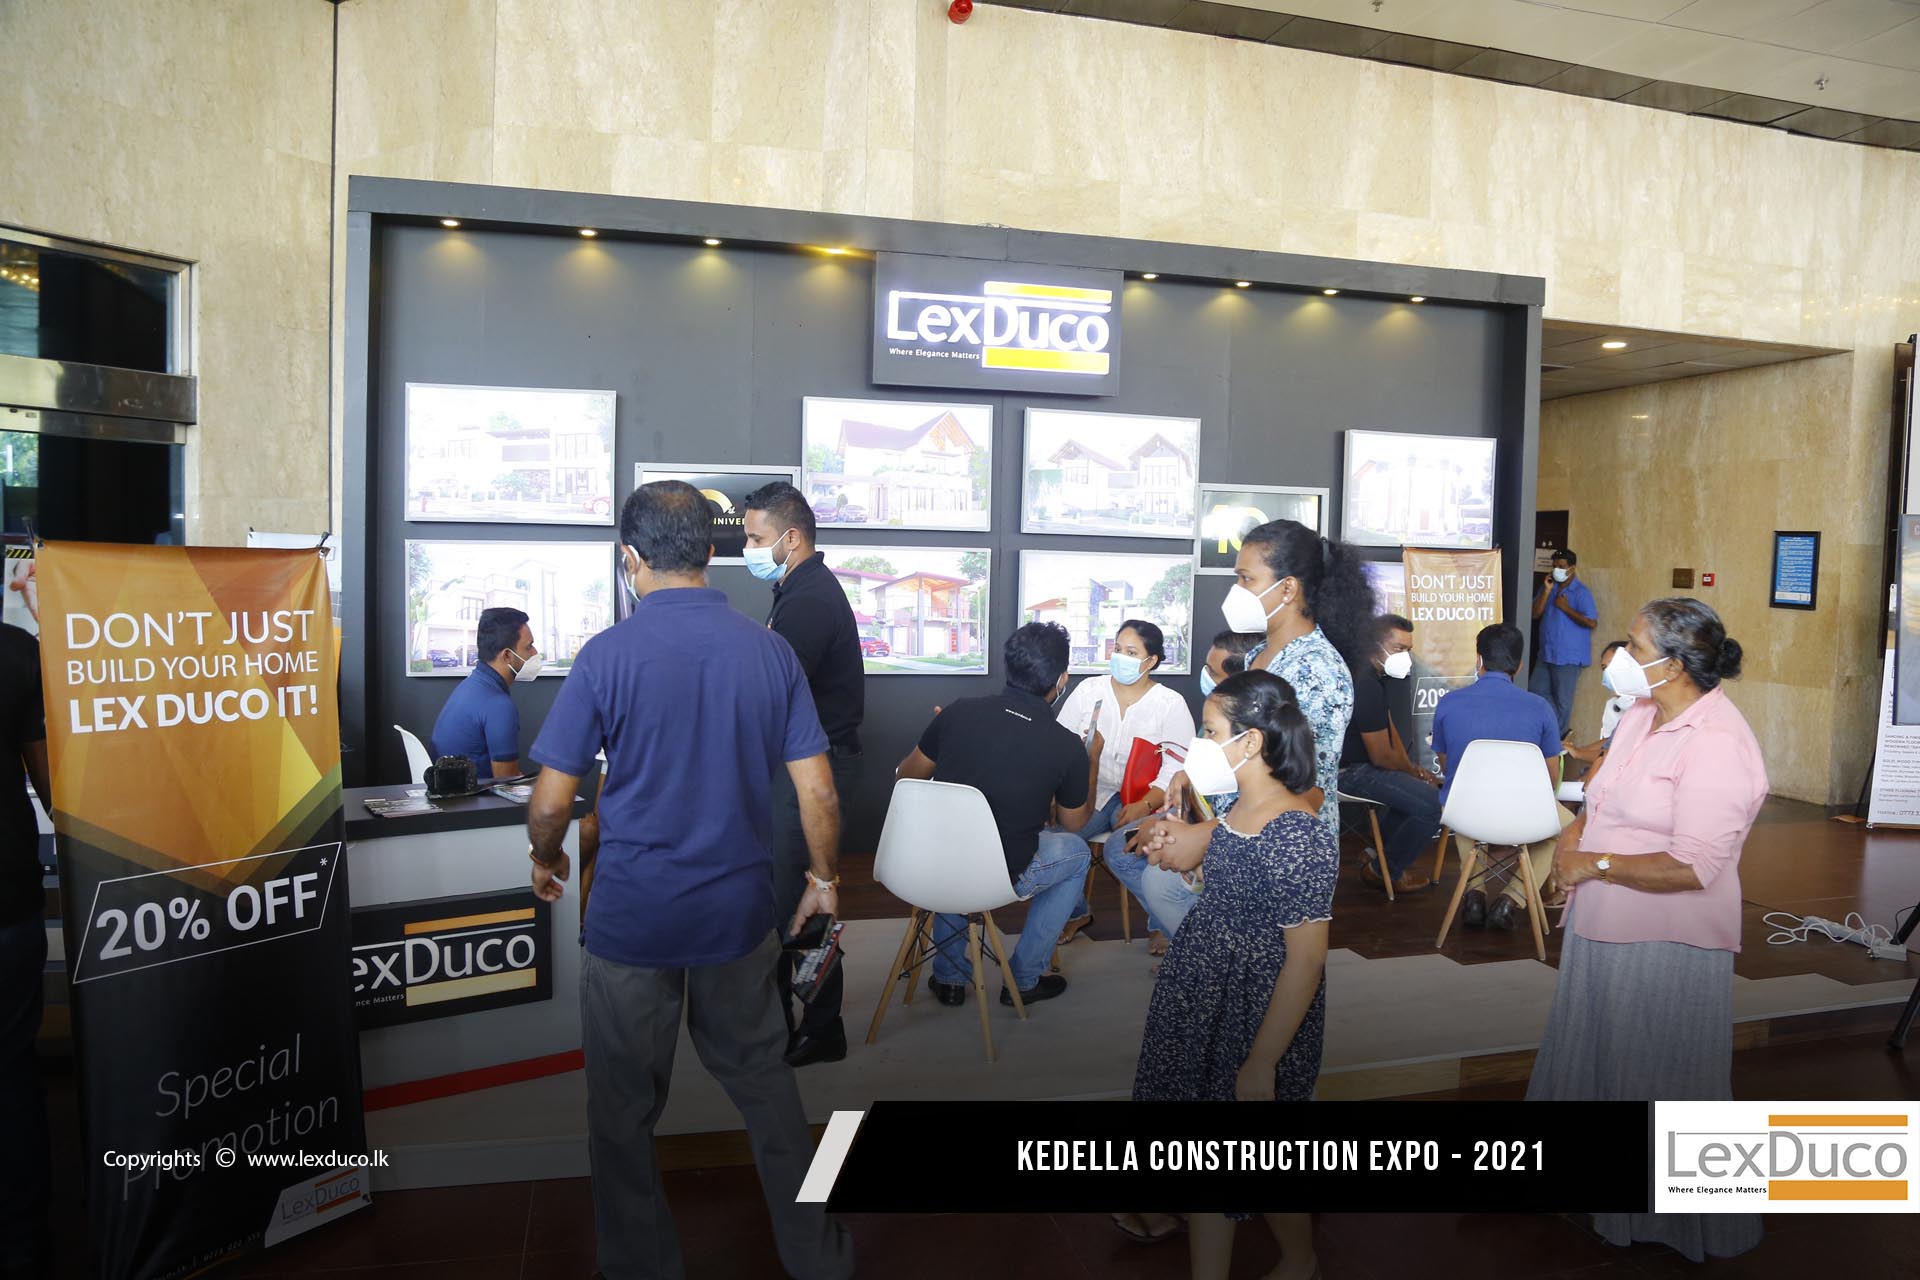 Kadalla Construction Expo - 2021 | Lex Duco